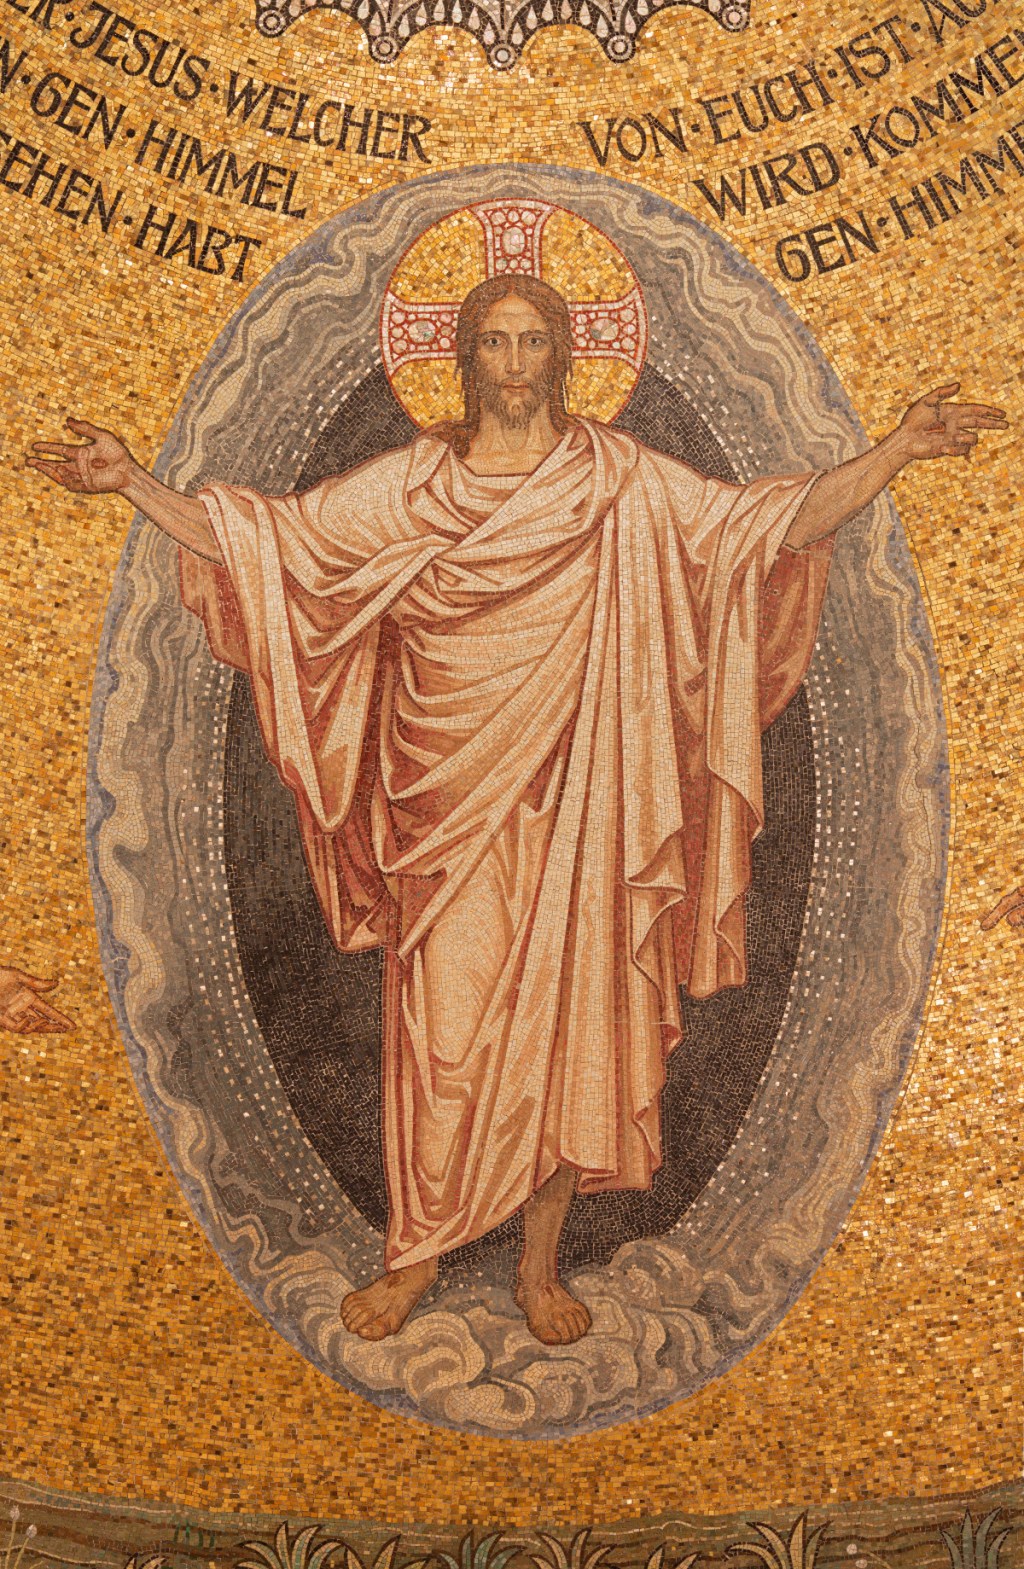 mozaika z kościoła w Jerozolimie przedstawiająca zmartwychwstałego Chrystusa